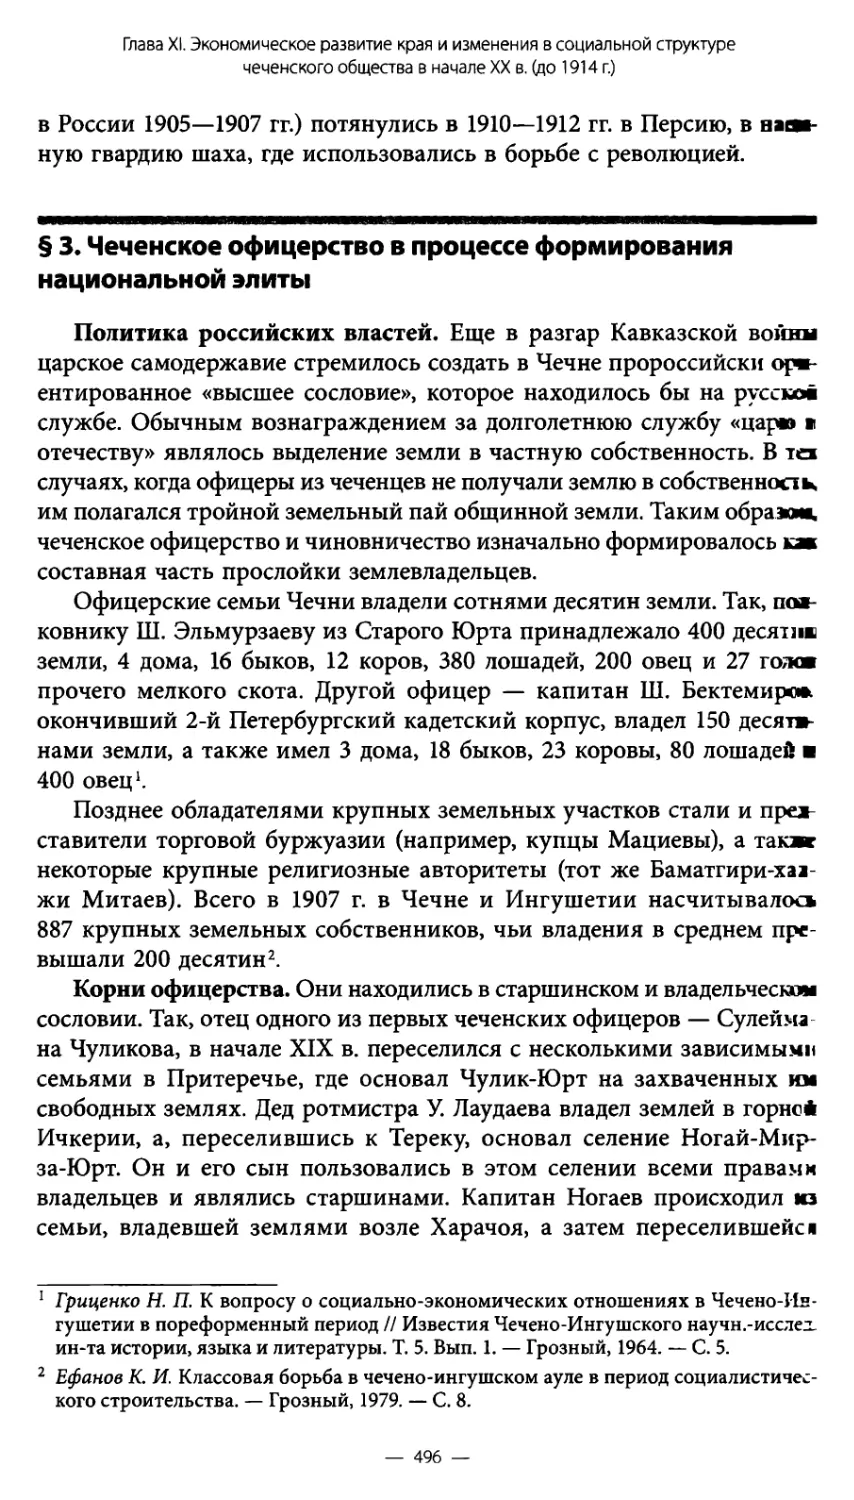 § 3. Чеченское офицерство в процессе формирования национальной элиты